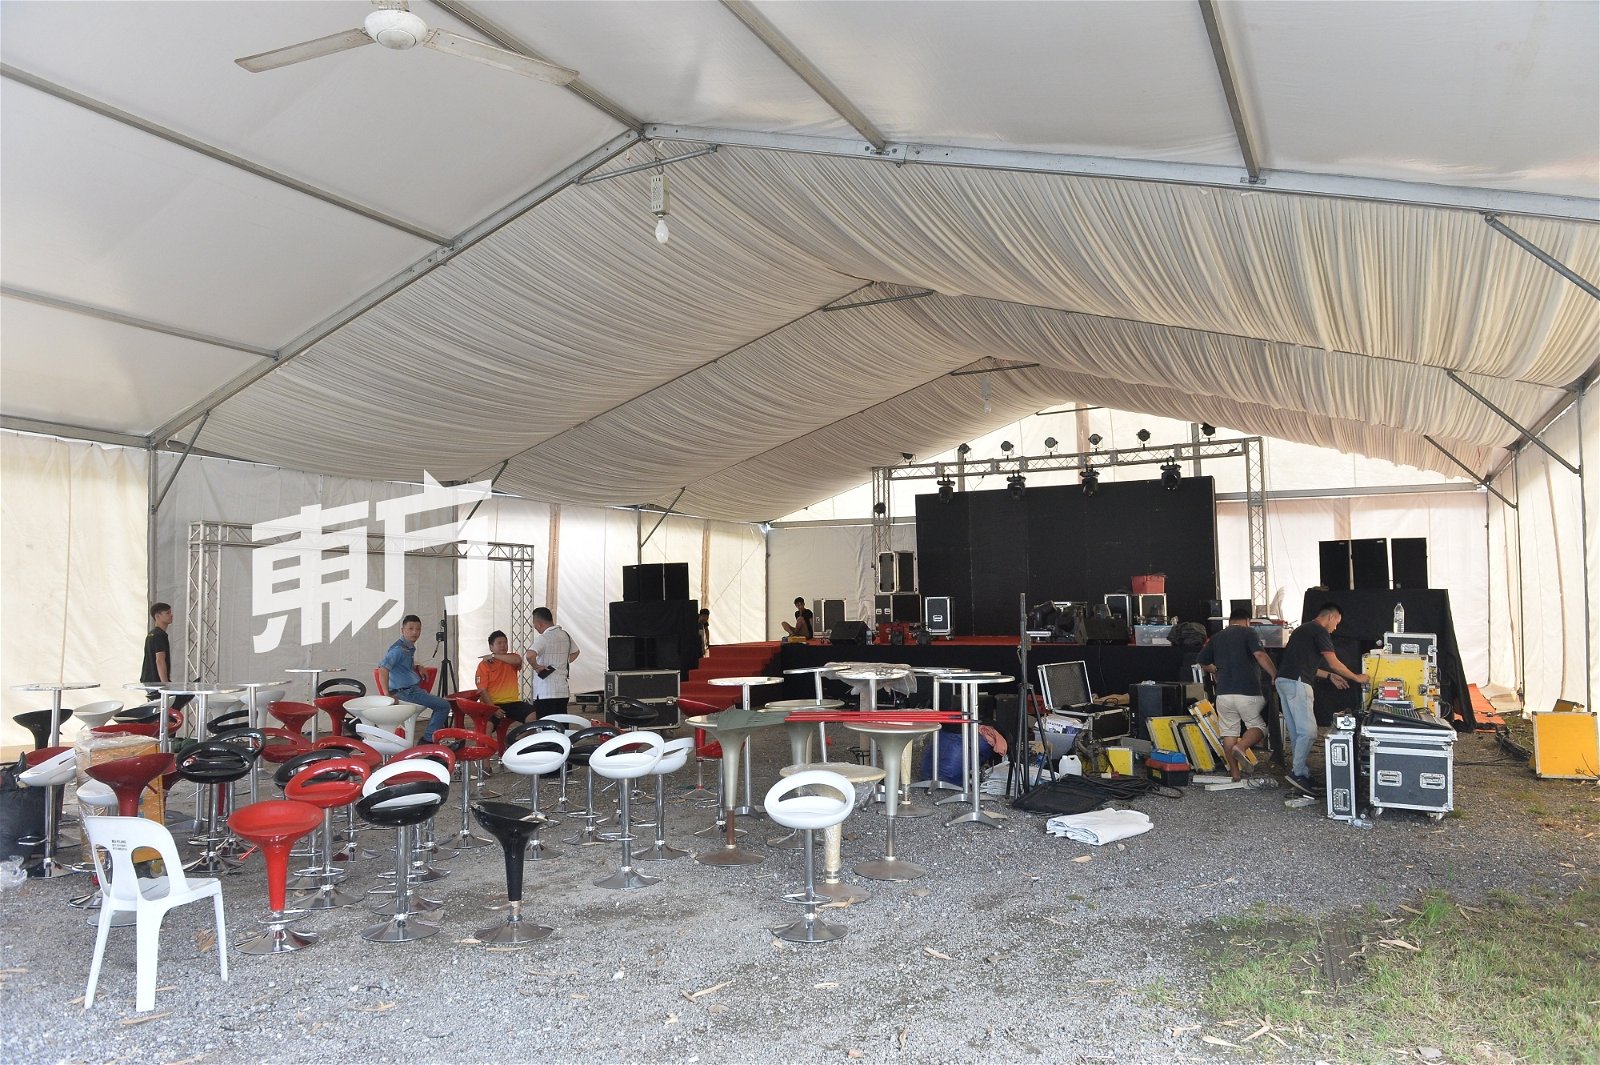 甲洞啤酒节的主要舞台已搭建完毕，工作人员正安装音响设备和排放桌椅。（摄影：颜泉春）